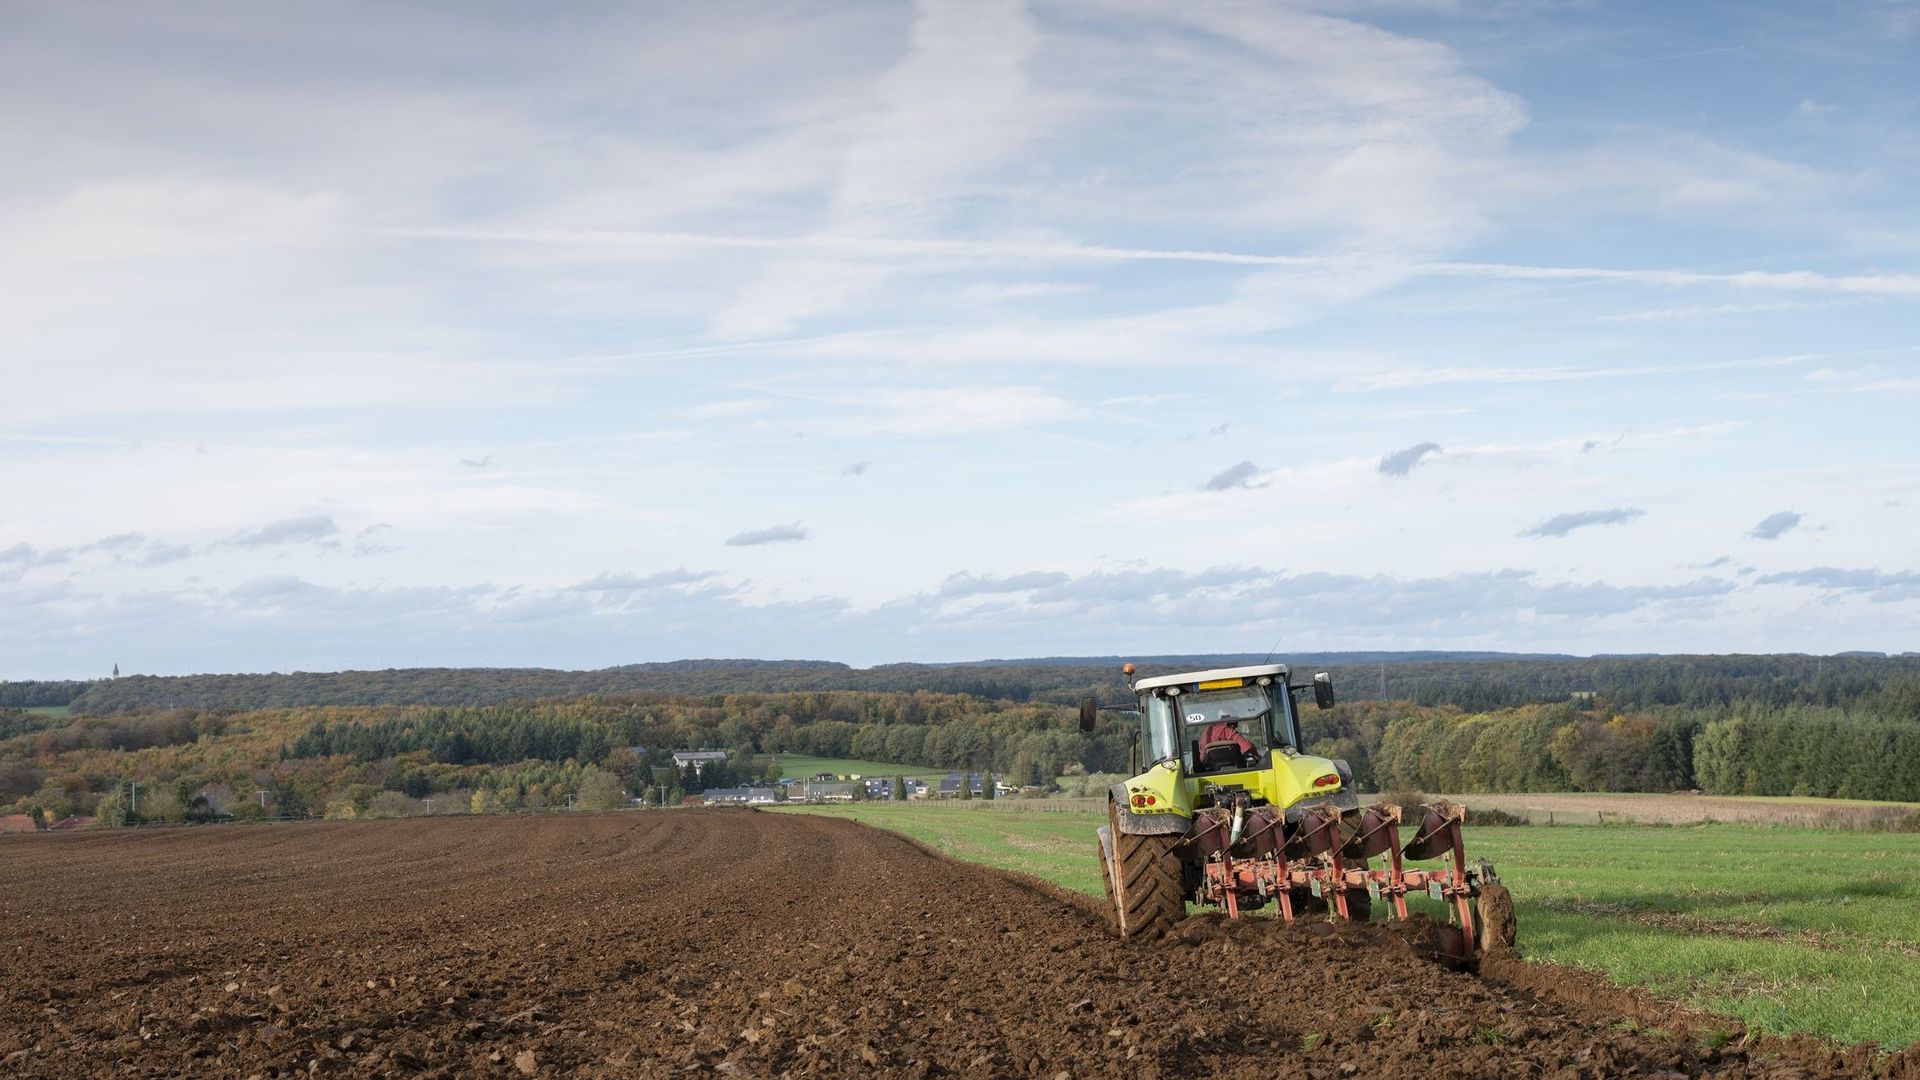 Le nombre d’exploitations agricoles stable en Wallonie depuis une décennie